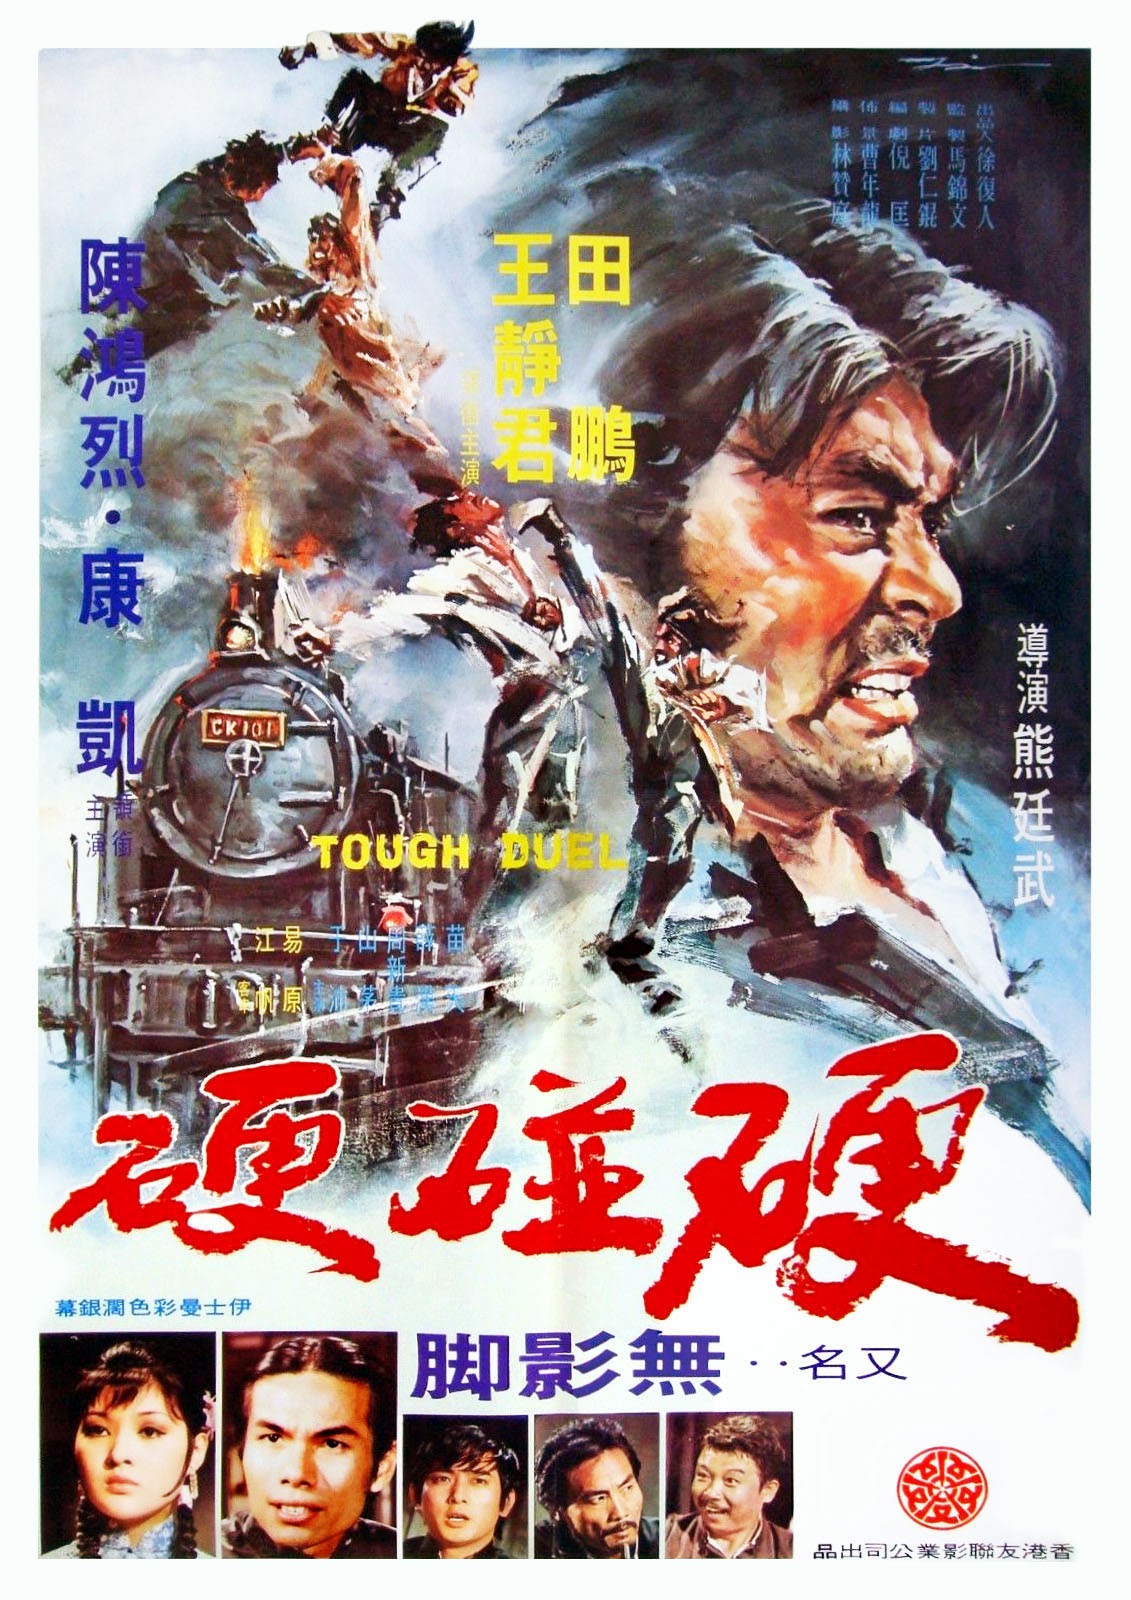 Ying peng ying (1972) Screenshot 1